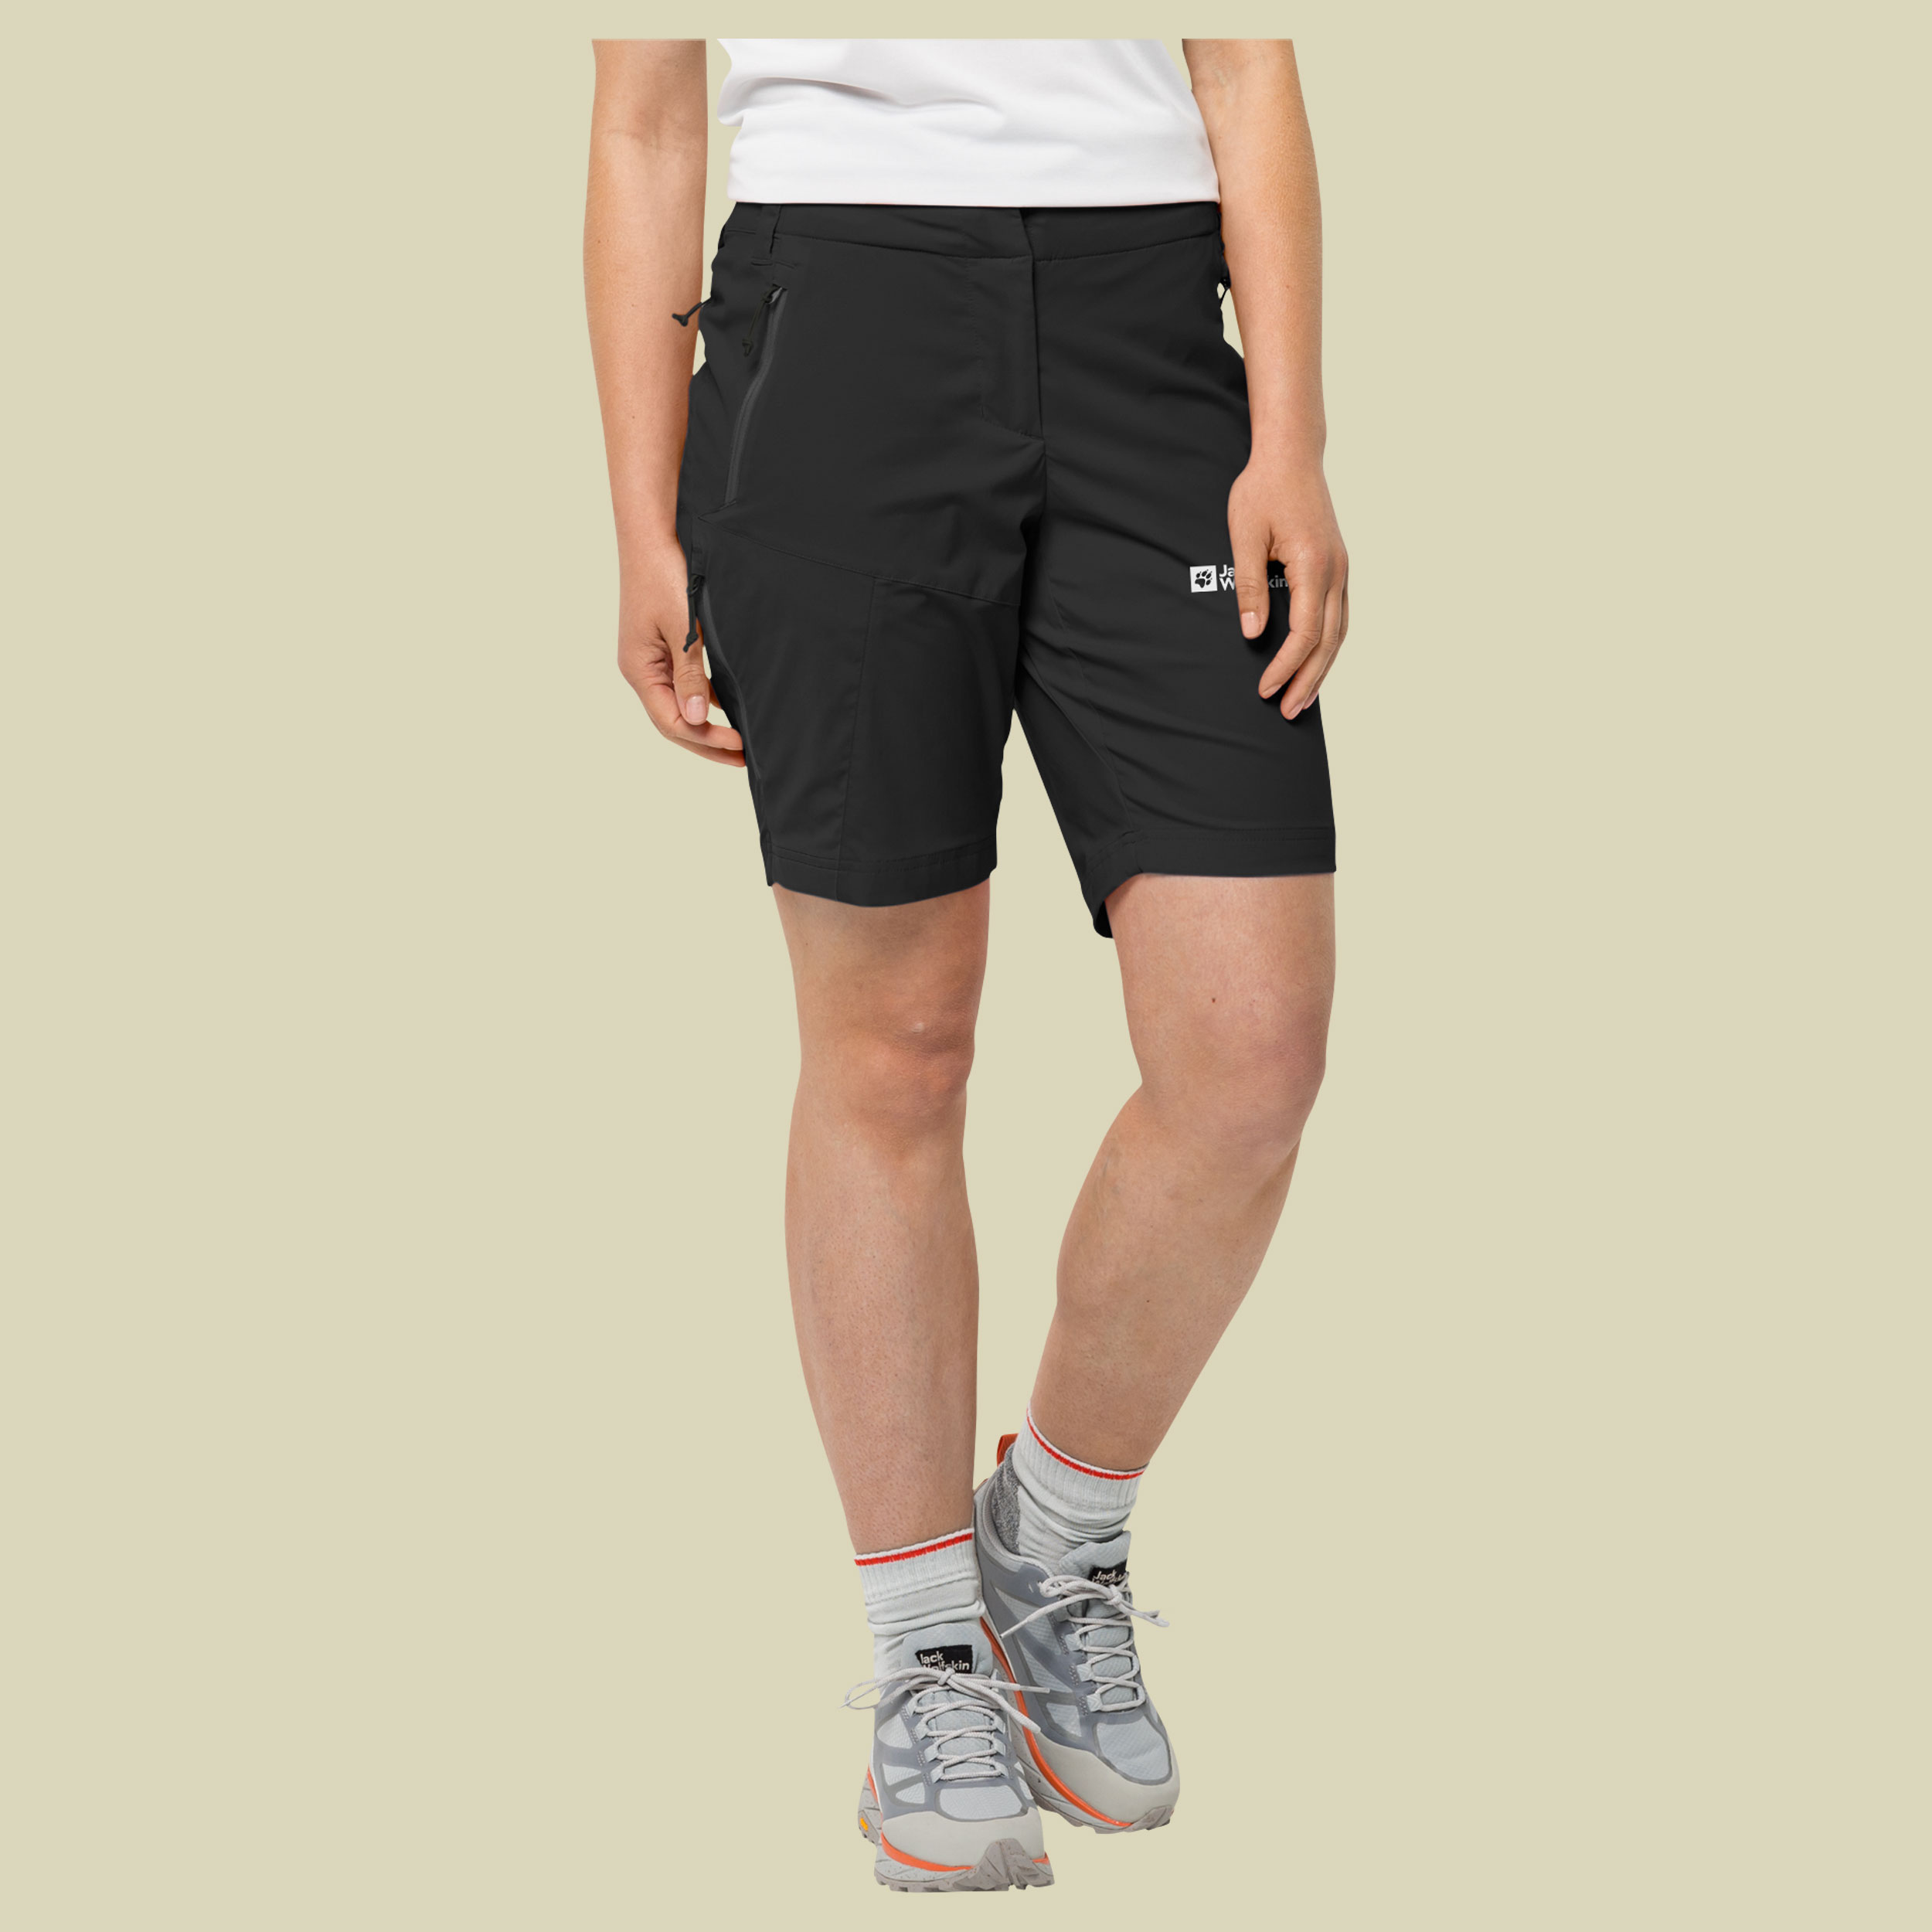 Glastal Shorts Women 36 schwarz - black